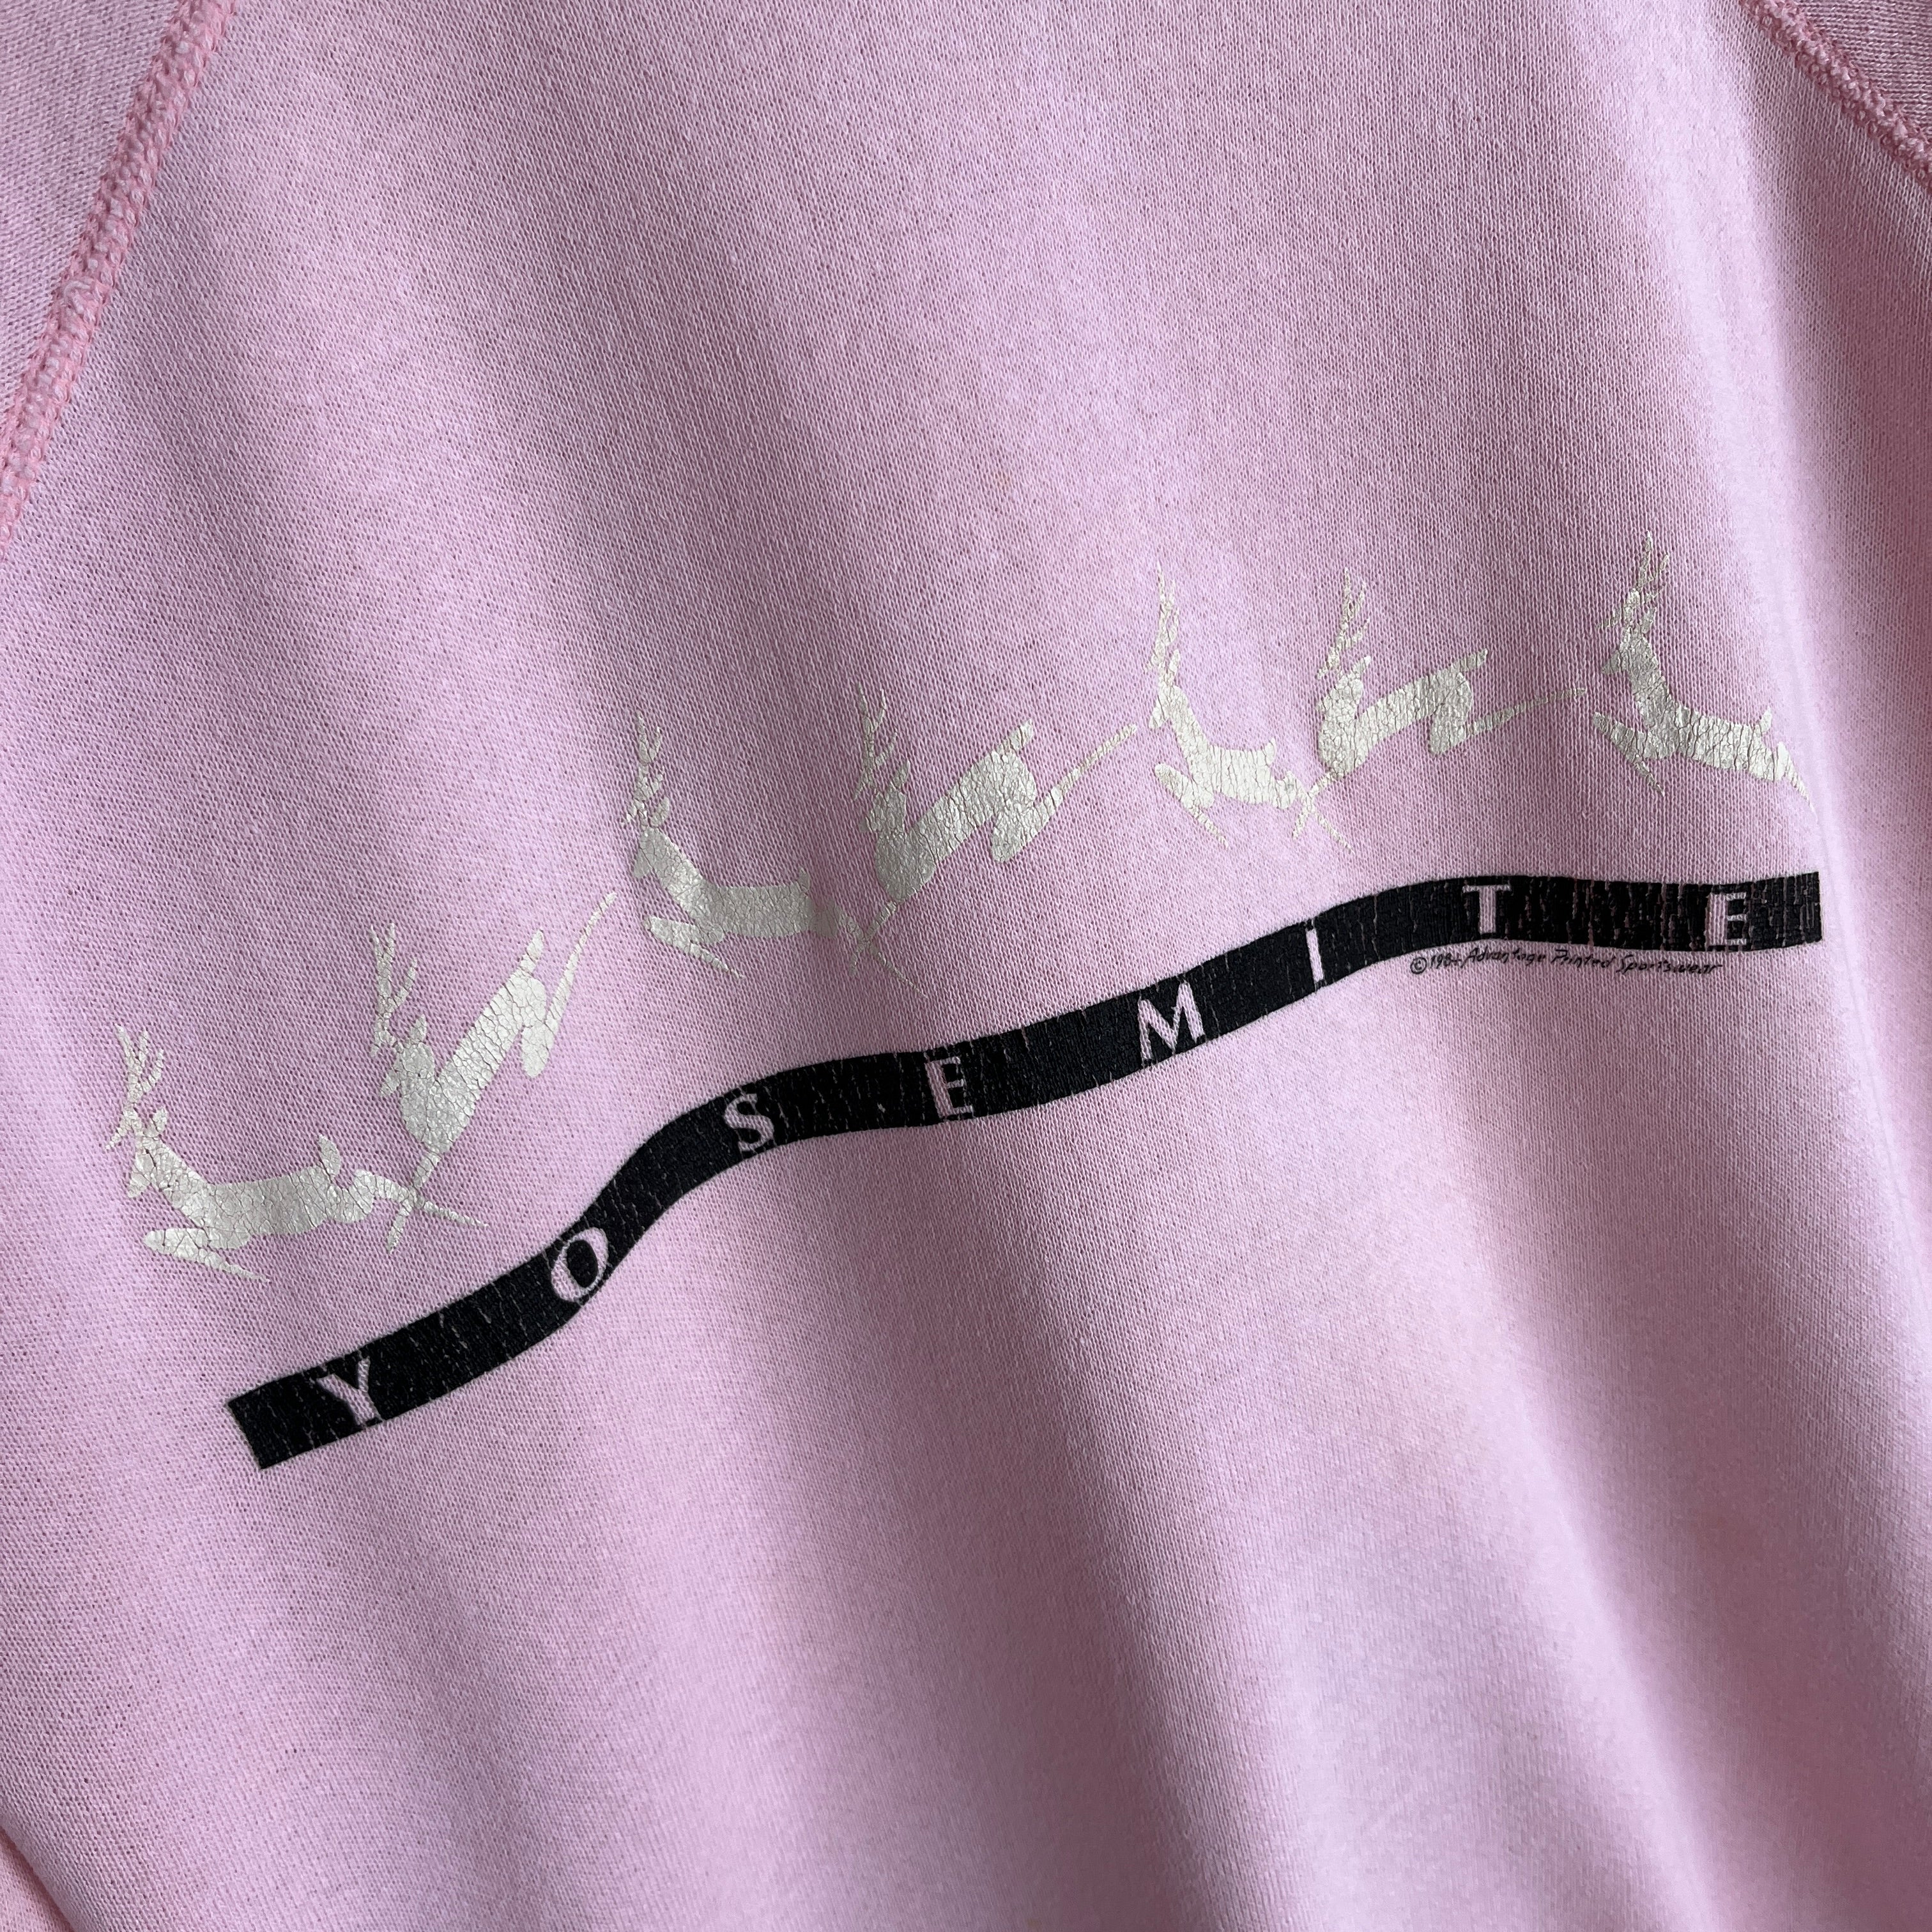 1984 Yosemite Pale Pink Raglan Sweatshirt